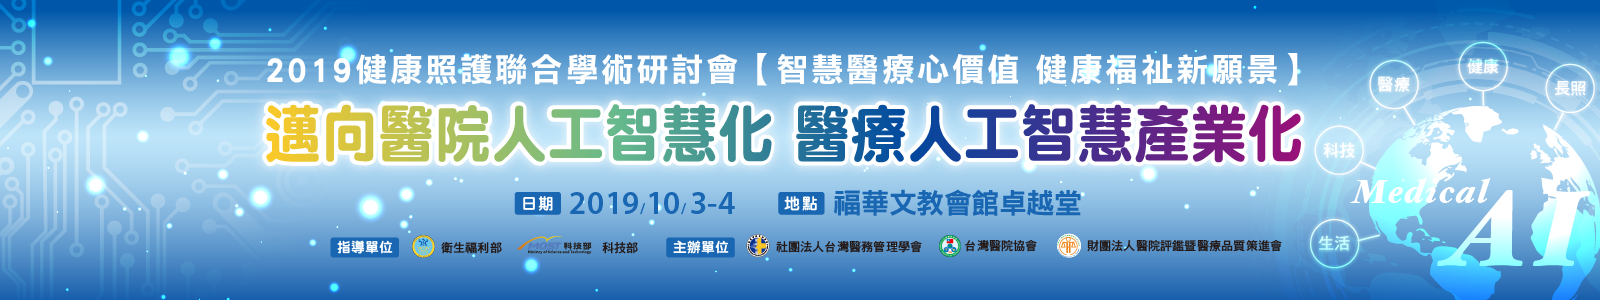 【2019年健康照護聯合學術研討會】將於2019年10月3-4日福華文教會館2樓卓越堂舉辦